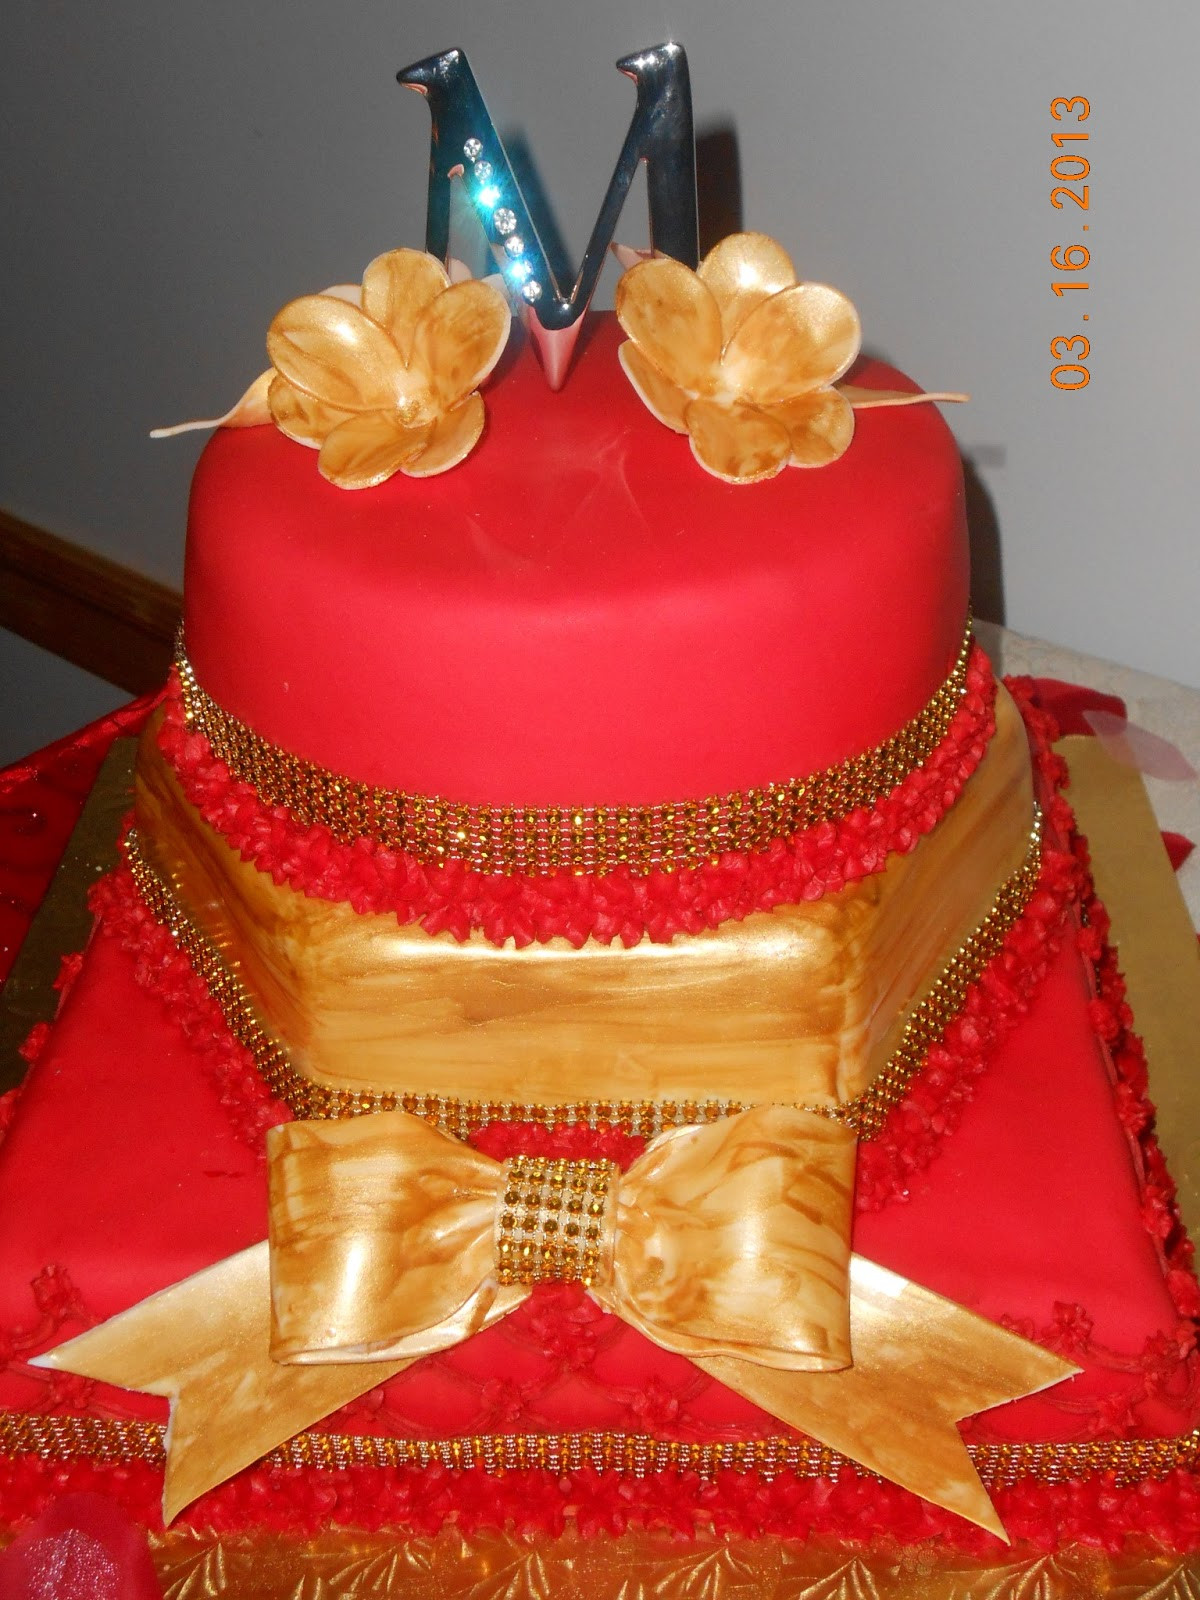 Bling Birthday Cakes
 Marilyn s Caribbean Cakes Michelle s Bling Birthday Cake